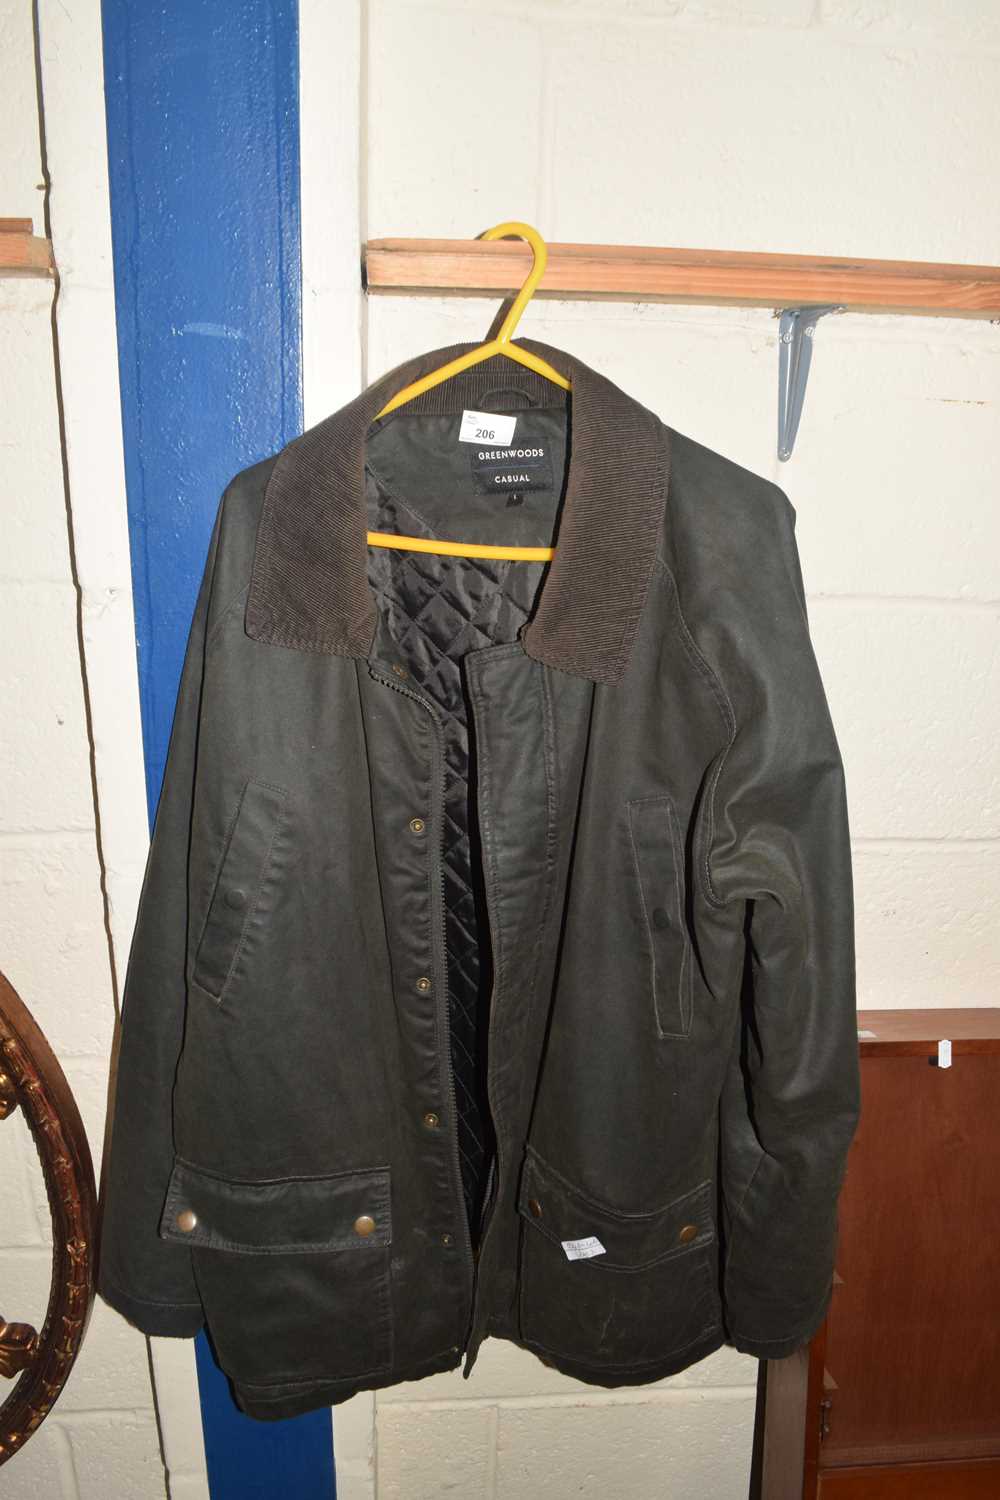 Greenwood casual wax jacket